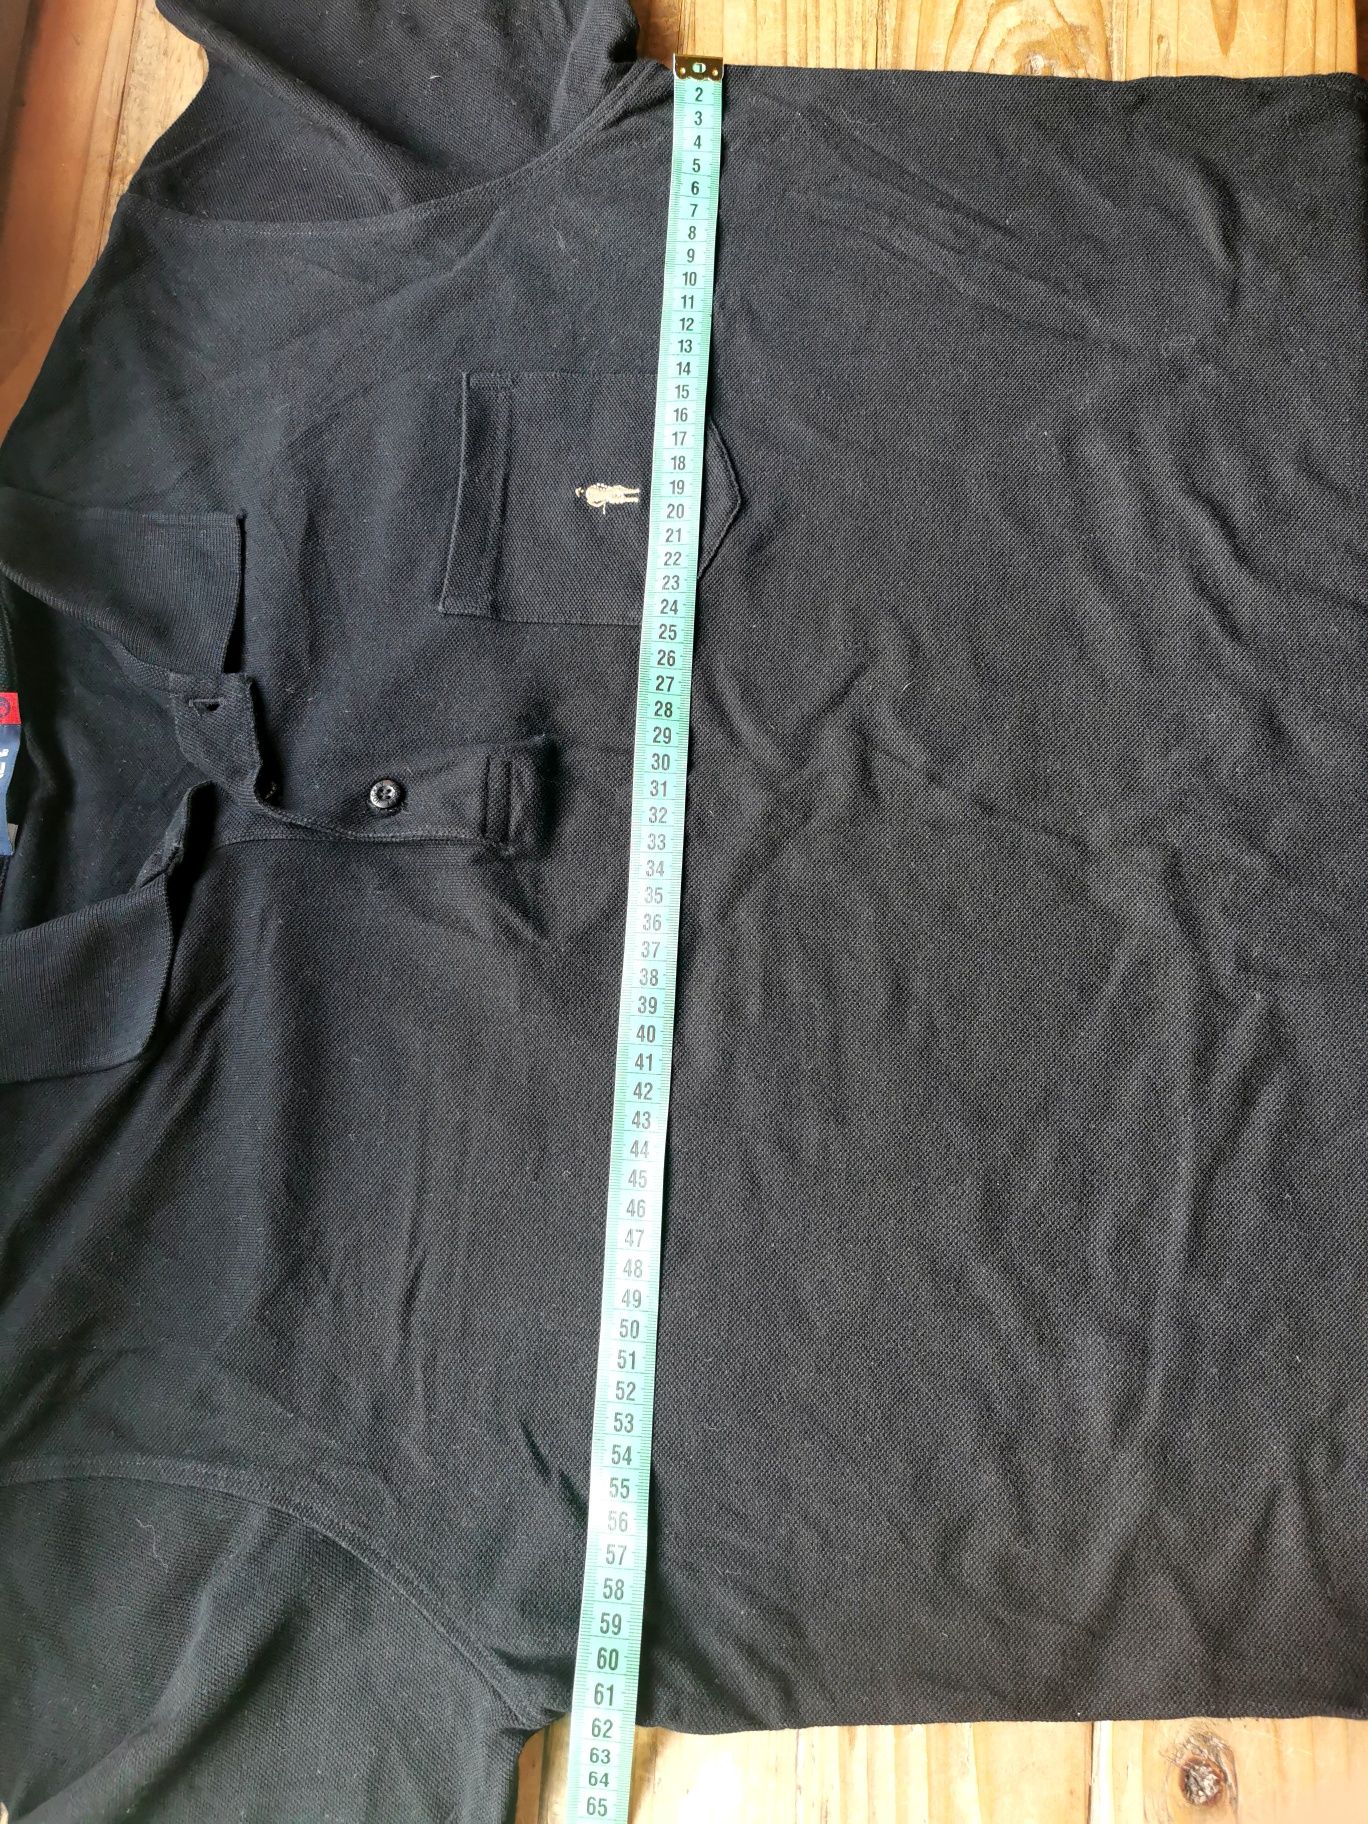 Czarna koszulka polo, rozmiar XL